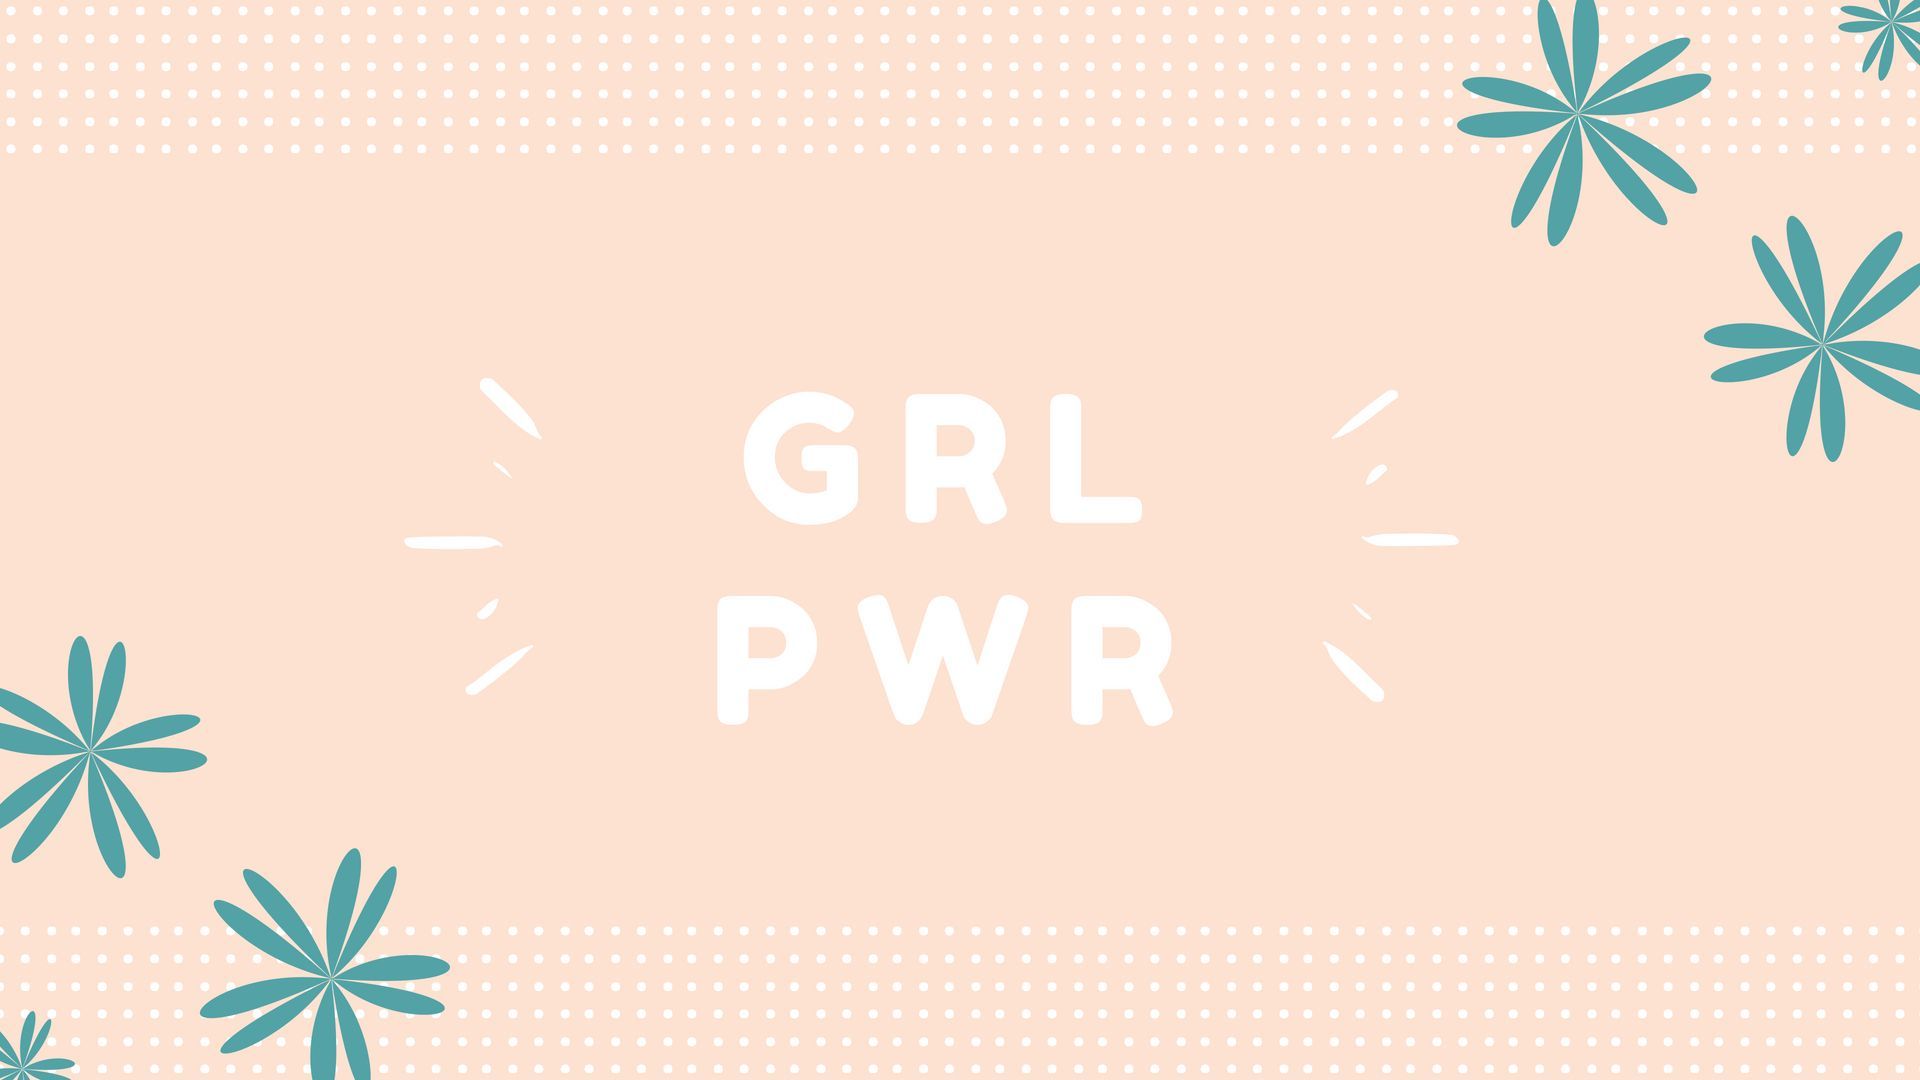 grl pwr (girl power) #pc #desktop #wallpaper #feminist